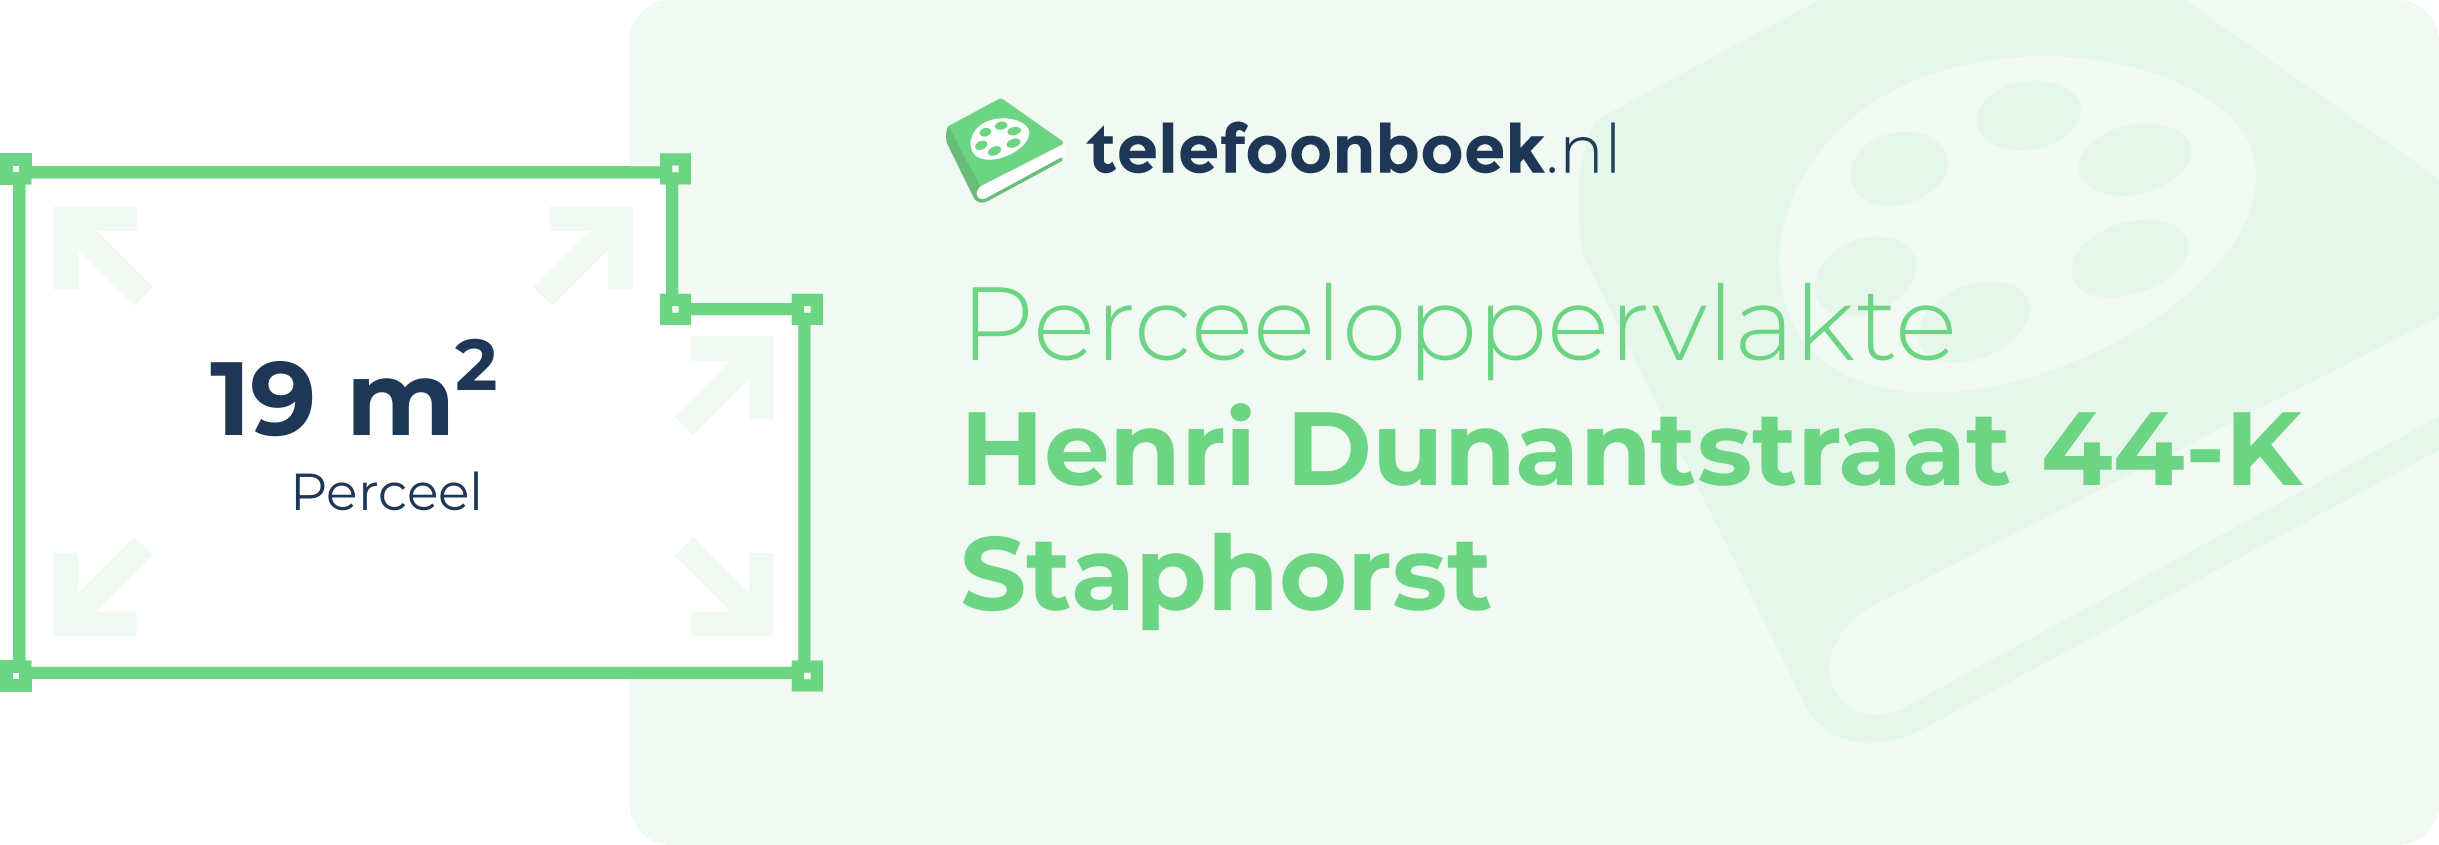 Perceeloppervlakte Henri Dunantstraat 44-K Staphorst